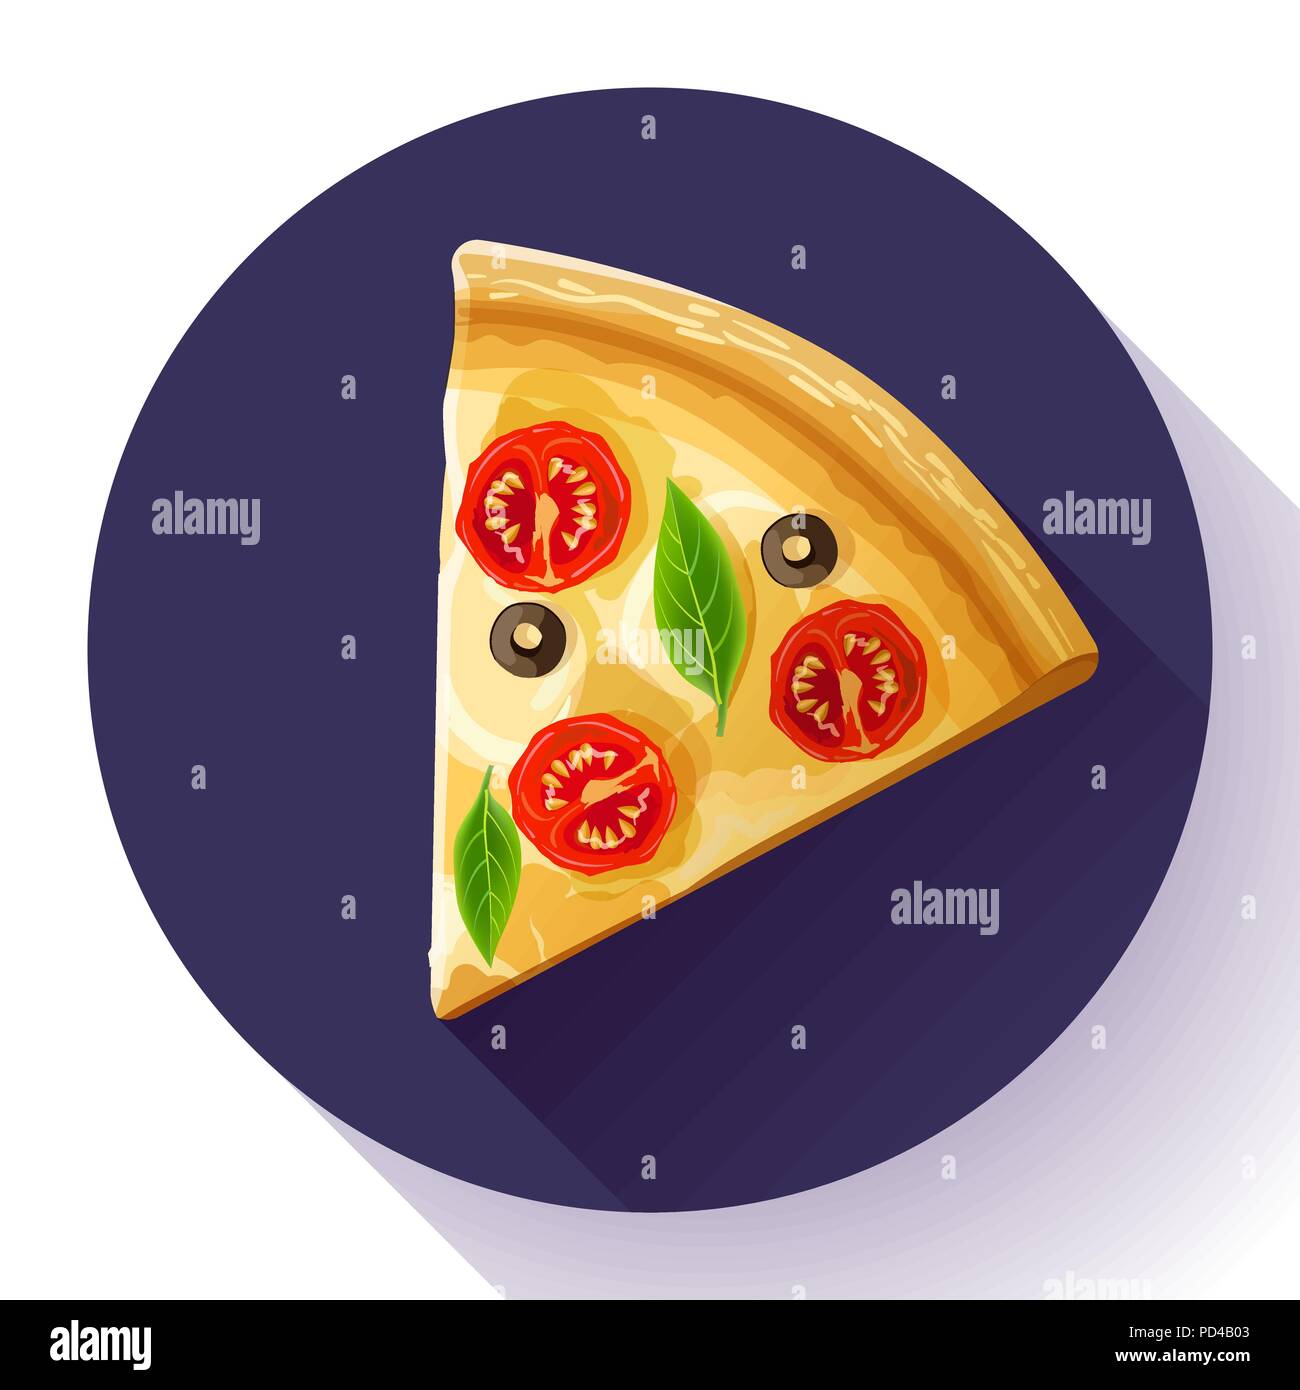 Pizza slice icon vector Stock Vector